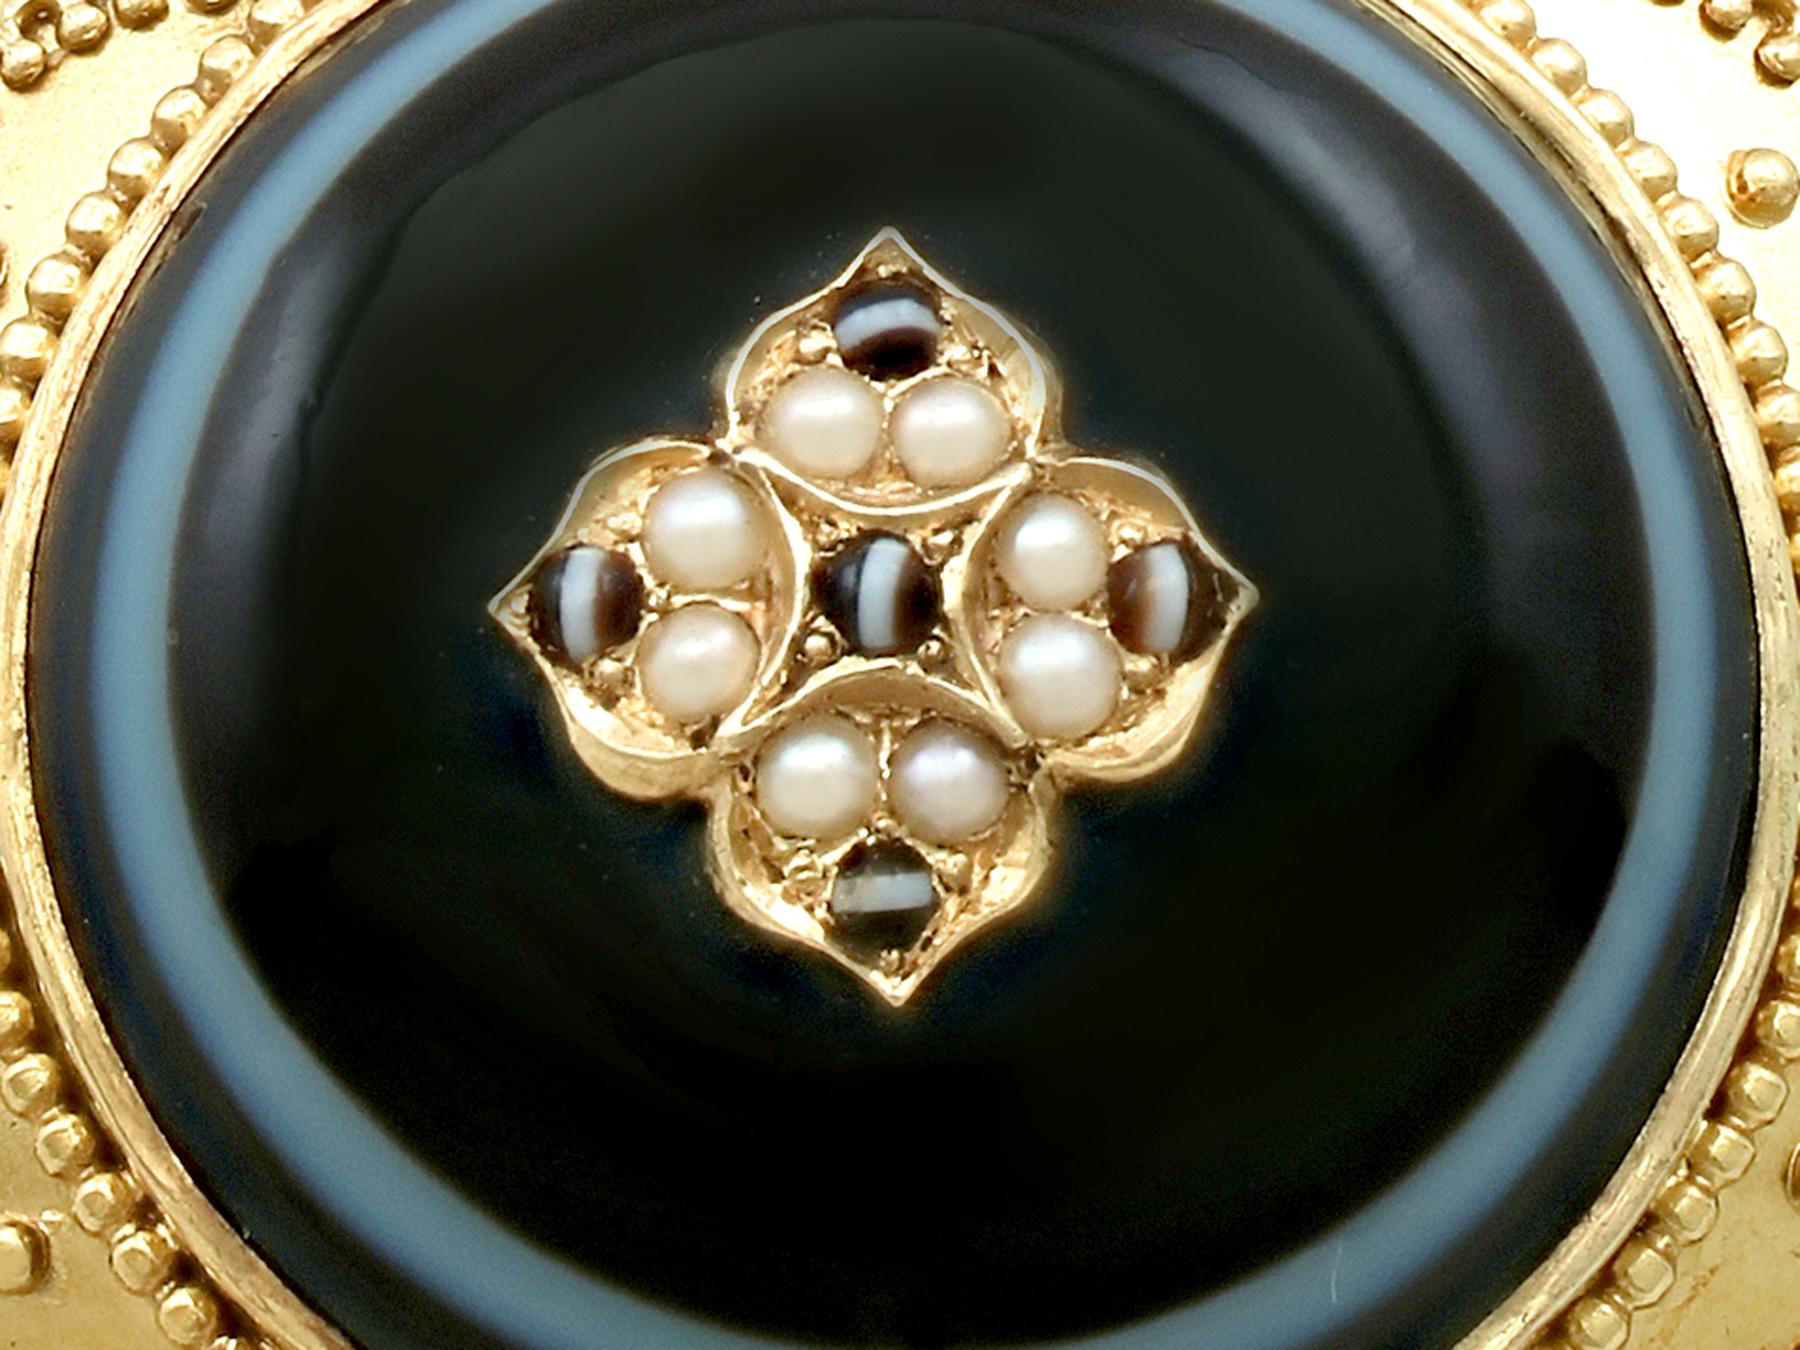 Une exceptionnelle, fine et impressionnante broche victorienne ancienne en agate et perles de rocaille, en or jaune 18 carats de style médaillon ; fait partie de nos collections de bijoux anciens et de bijoux de succession.

Cette exceptionnelle,